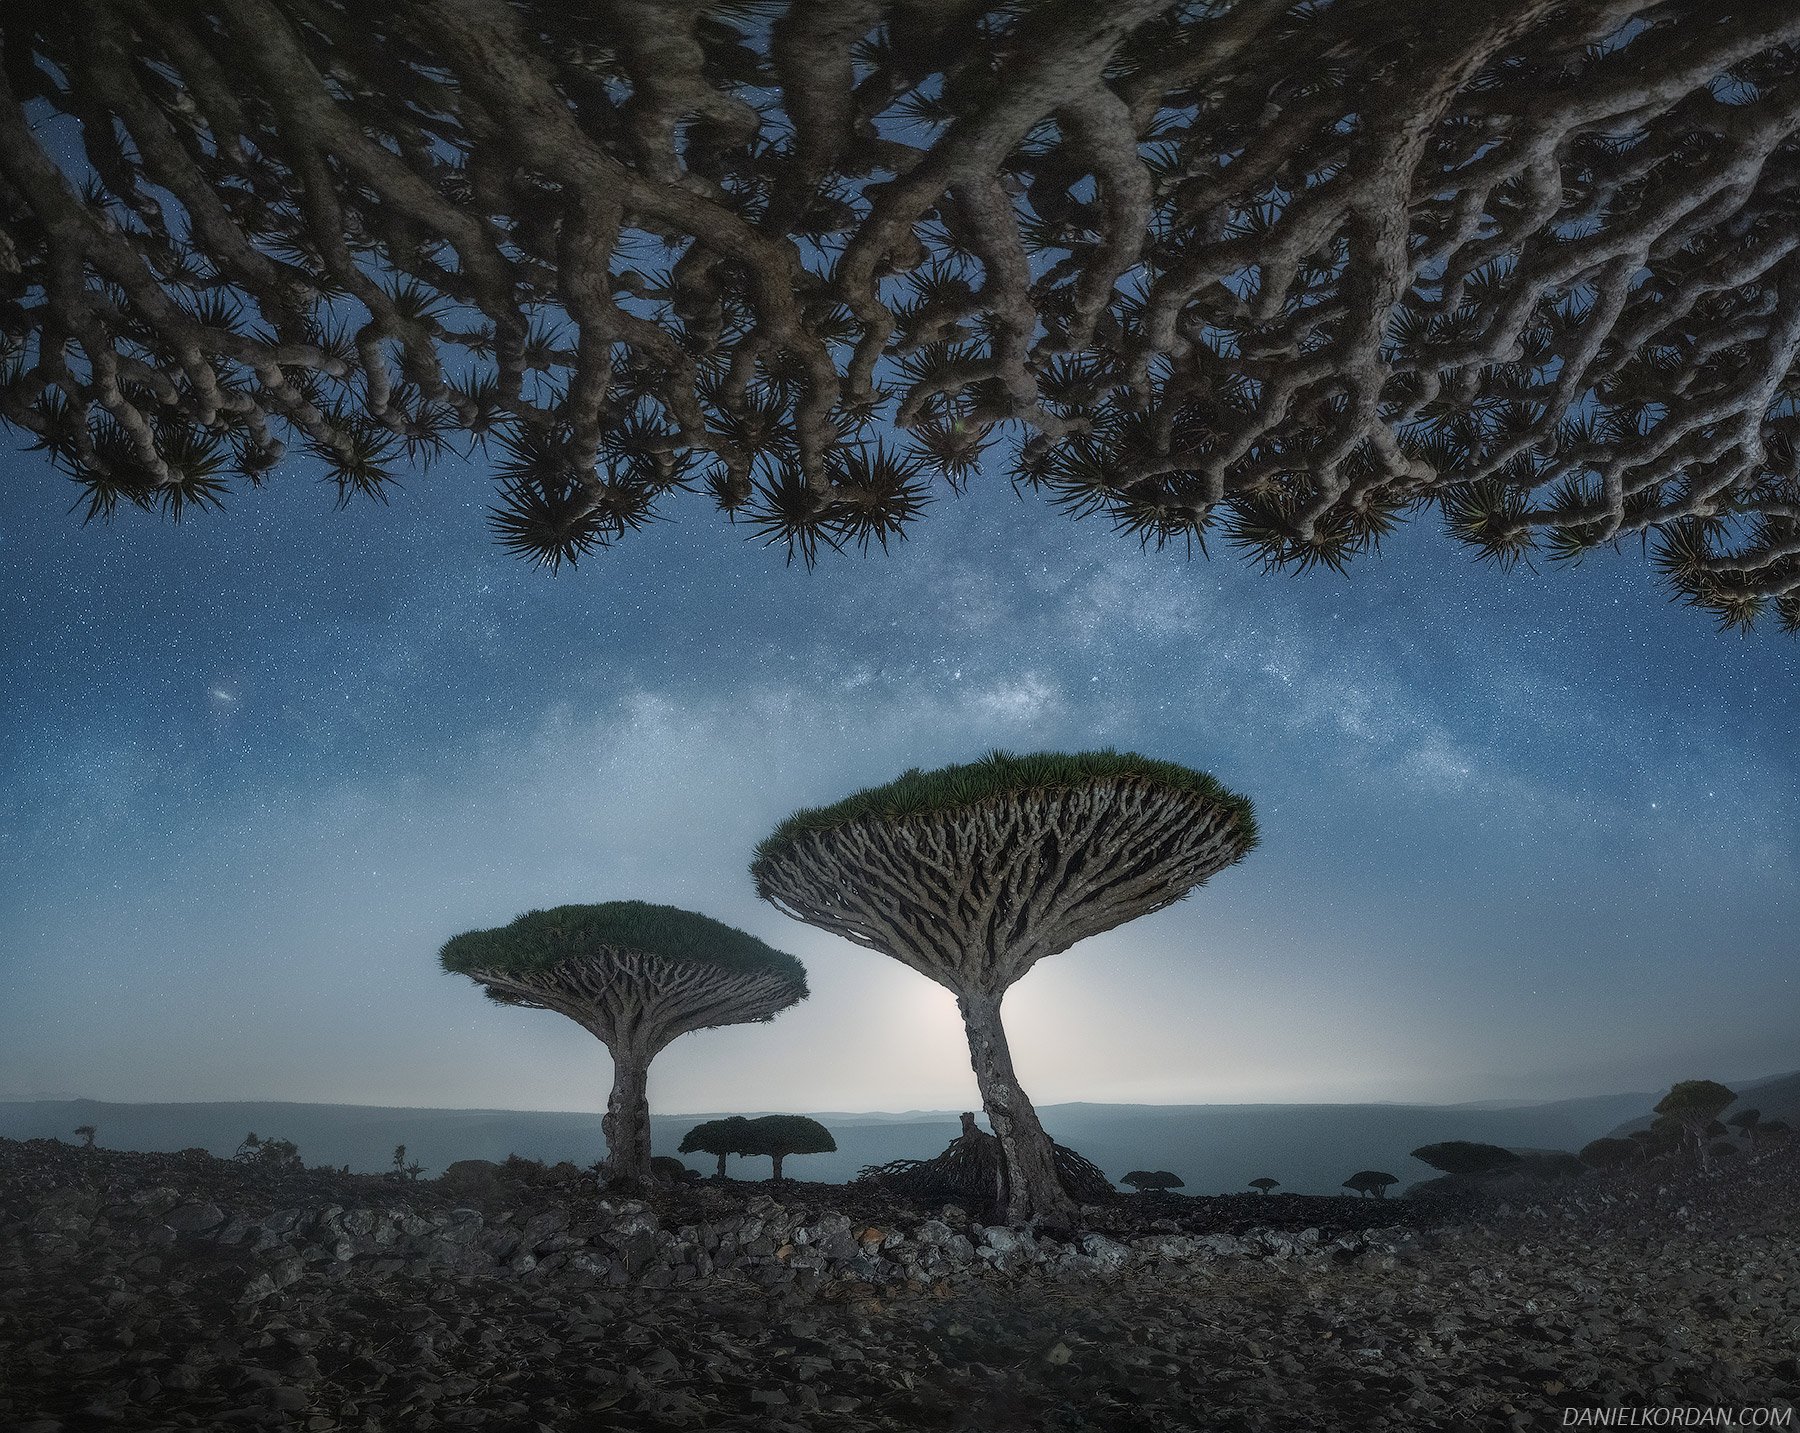 Los fascinantes y únicos árboles de Sangre de dragón, fotografiados por Daniel Kordan